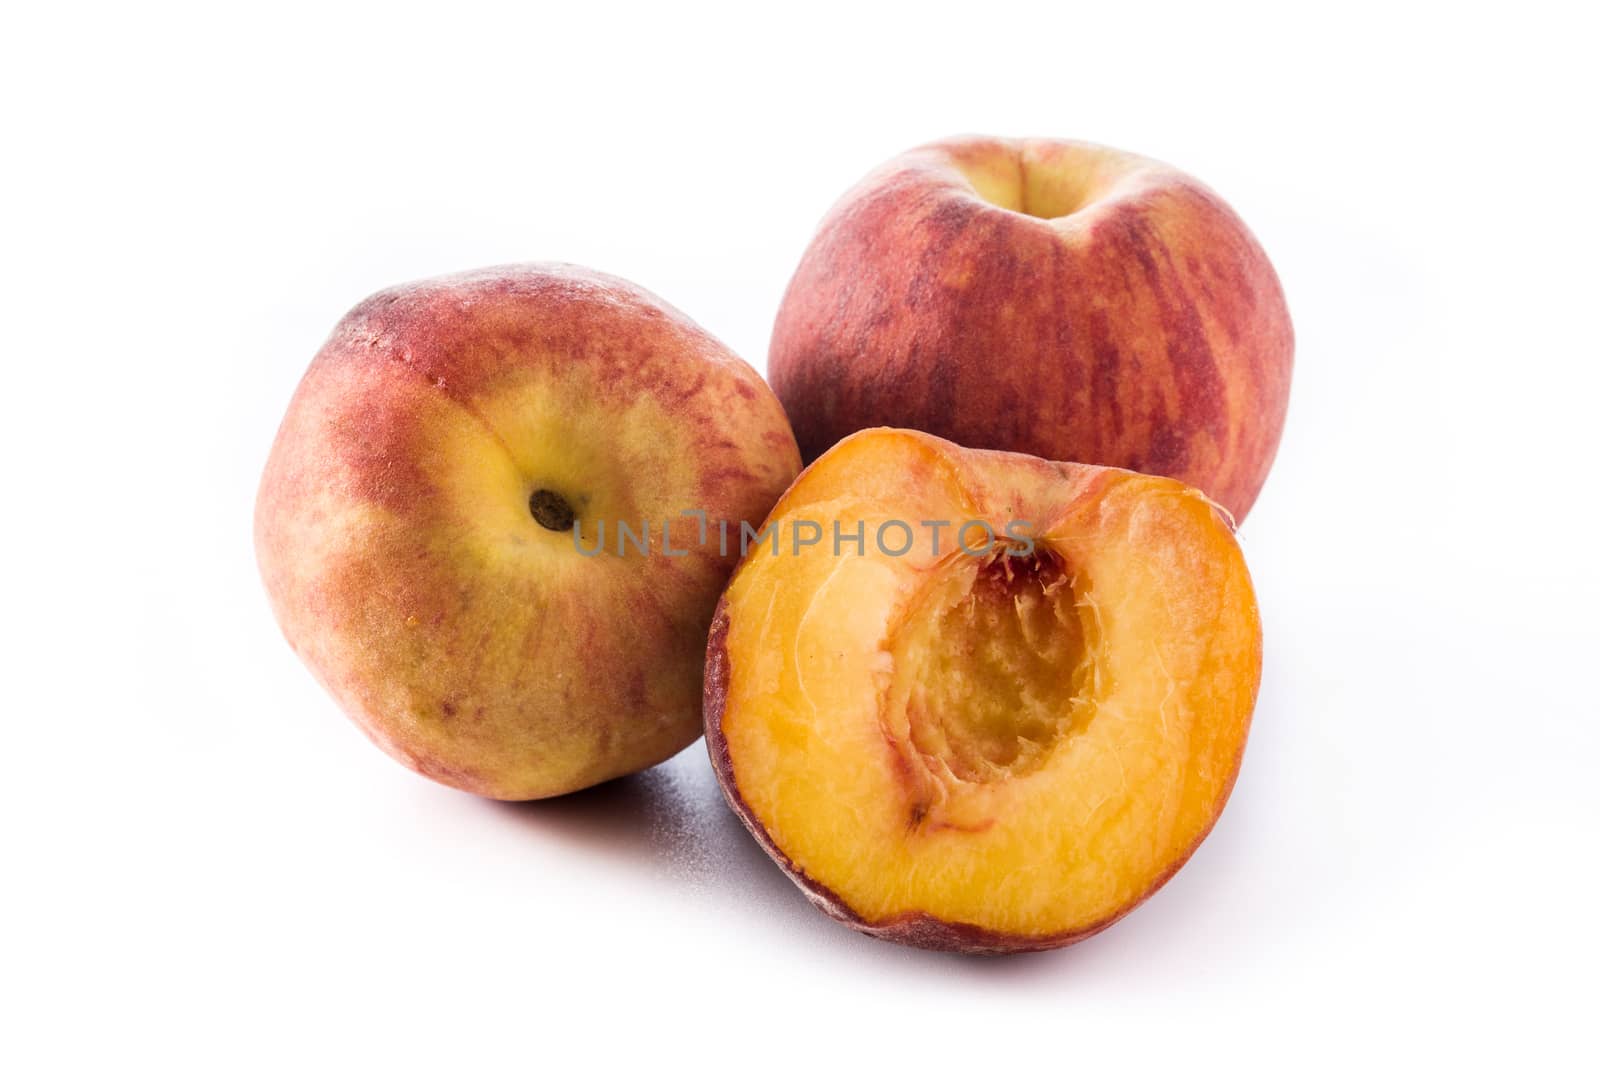 Fresh peach fruit by chandlervid85